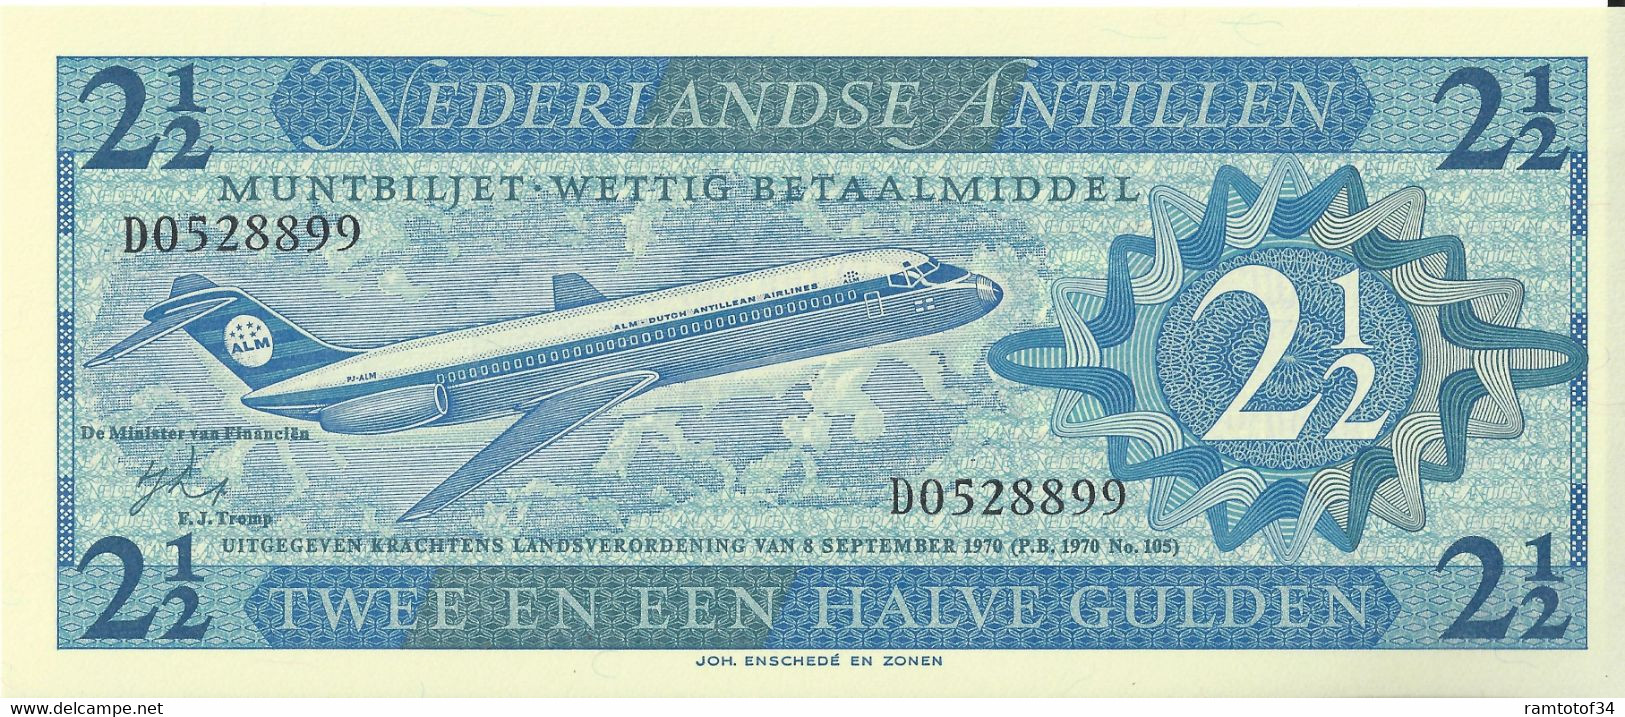 NEDERLANDLANDSE ANTILLEN - 2.5 Gulden 1970 UNC - Nederlandse Antillen (...-1986)